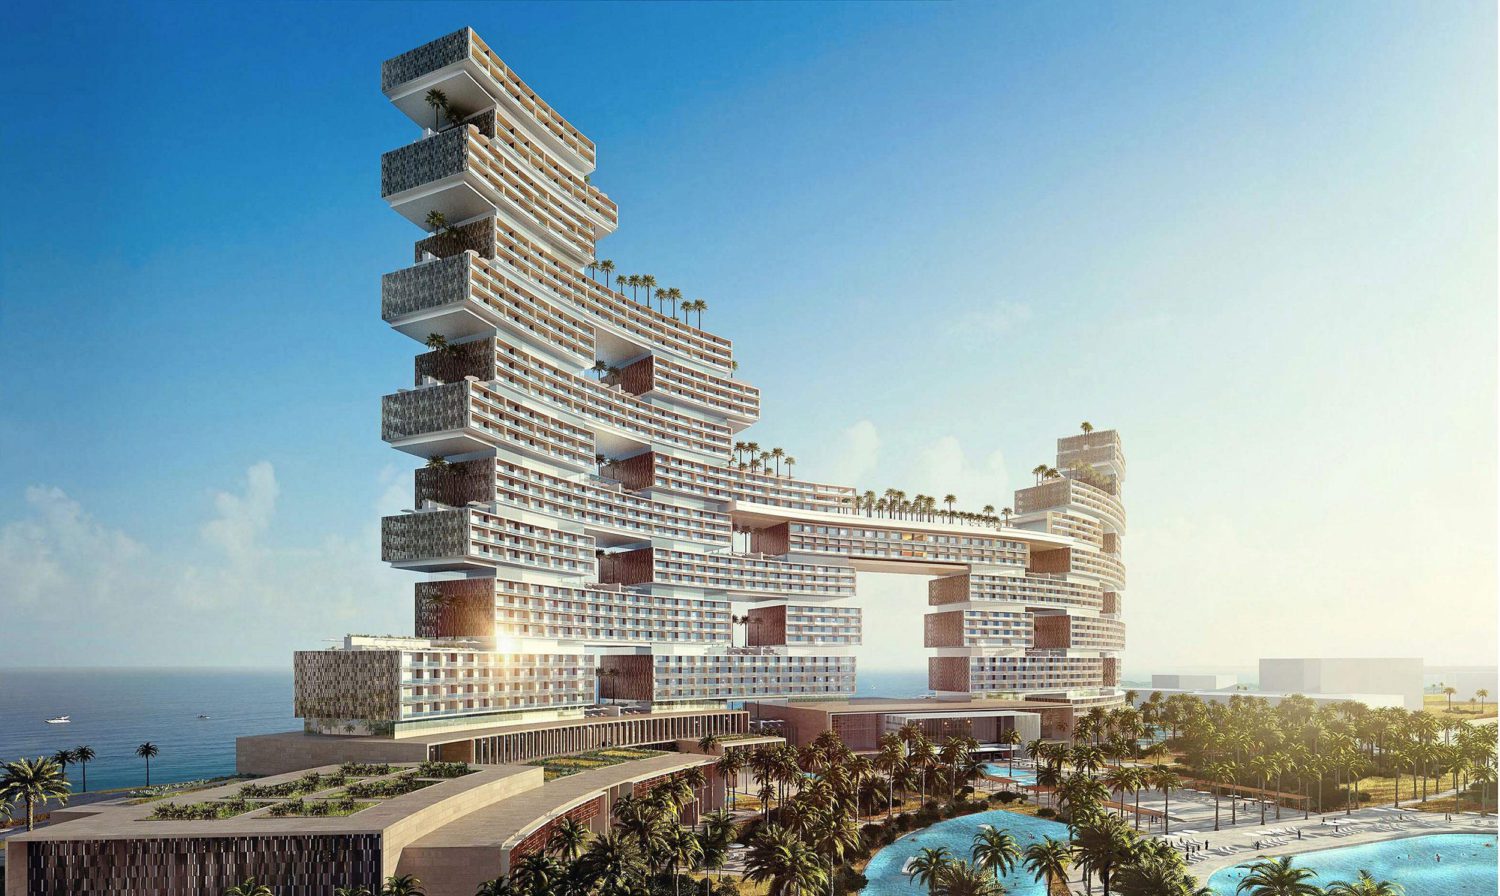 The new Atlantis The Royal in Dubai will open in November 2022 Enova